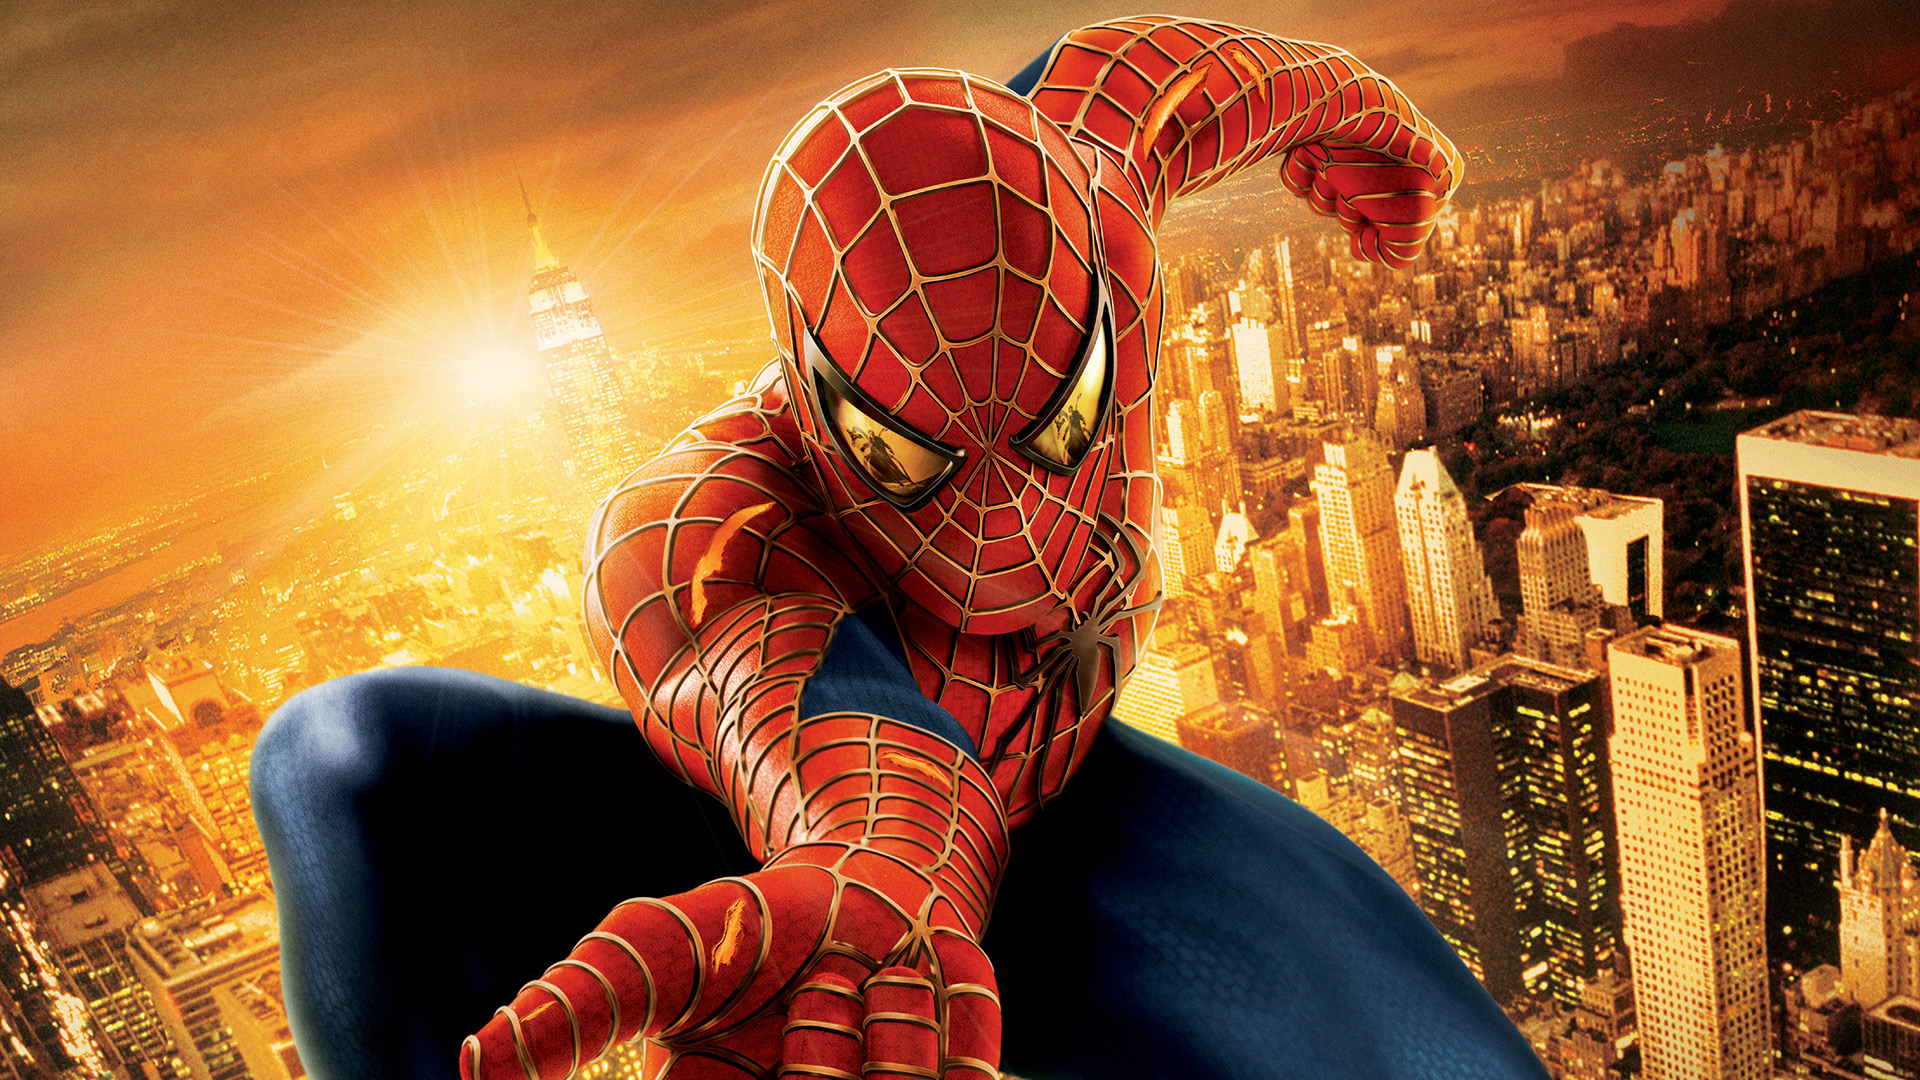 Wallpaper Spider man 2 movie